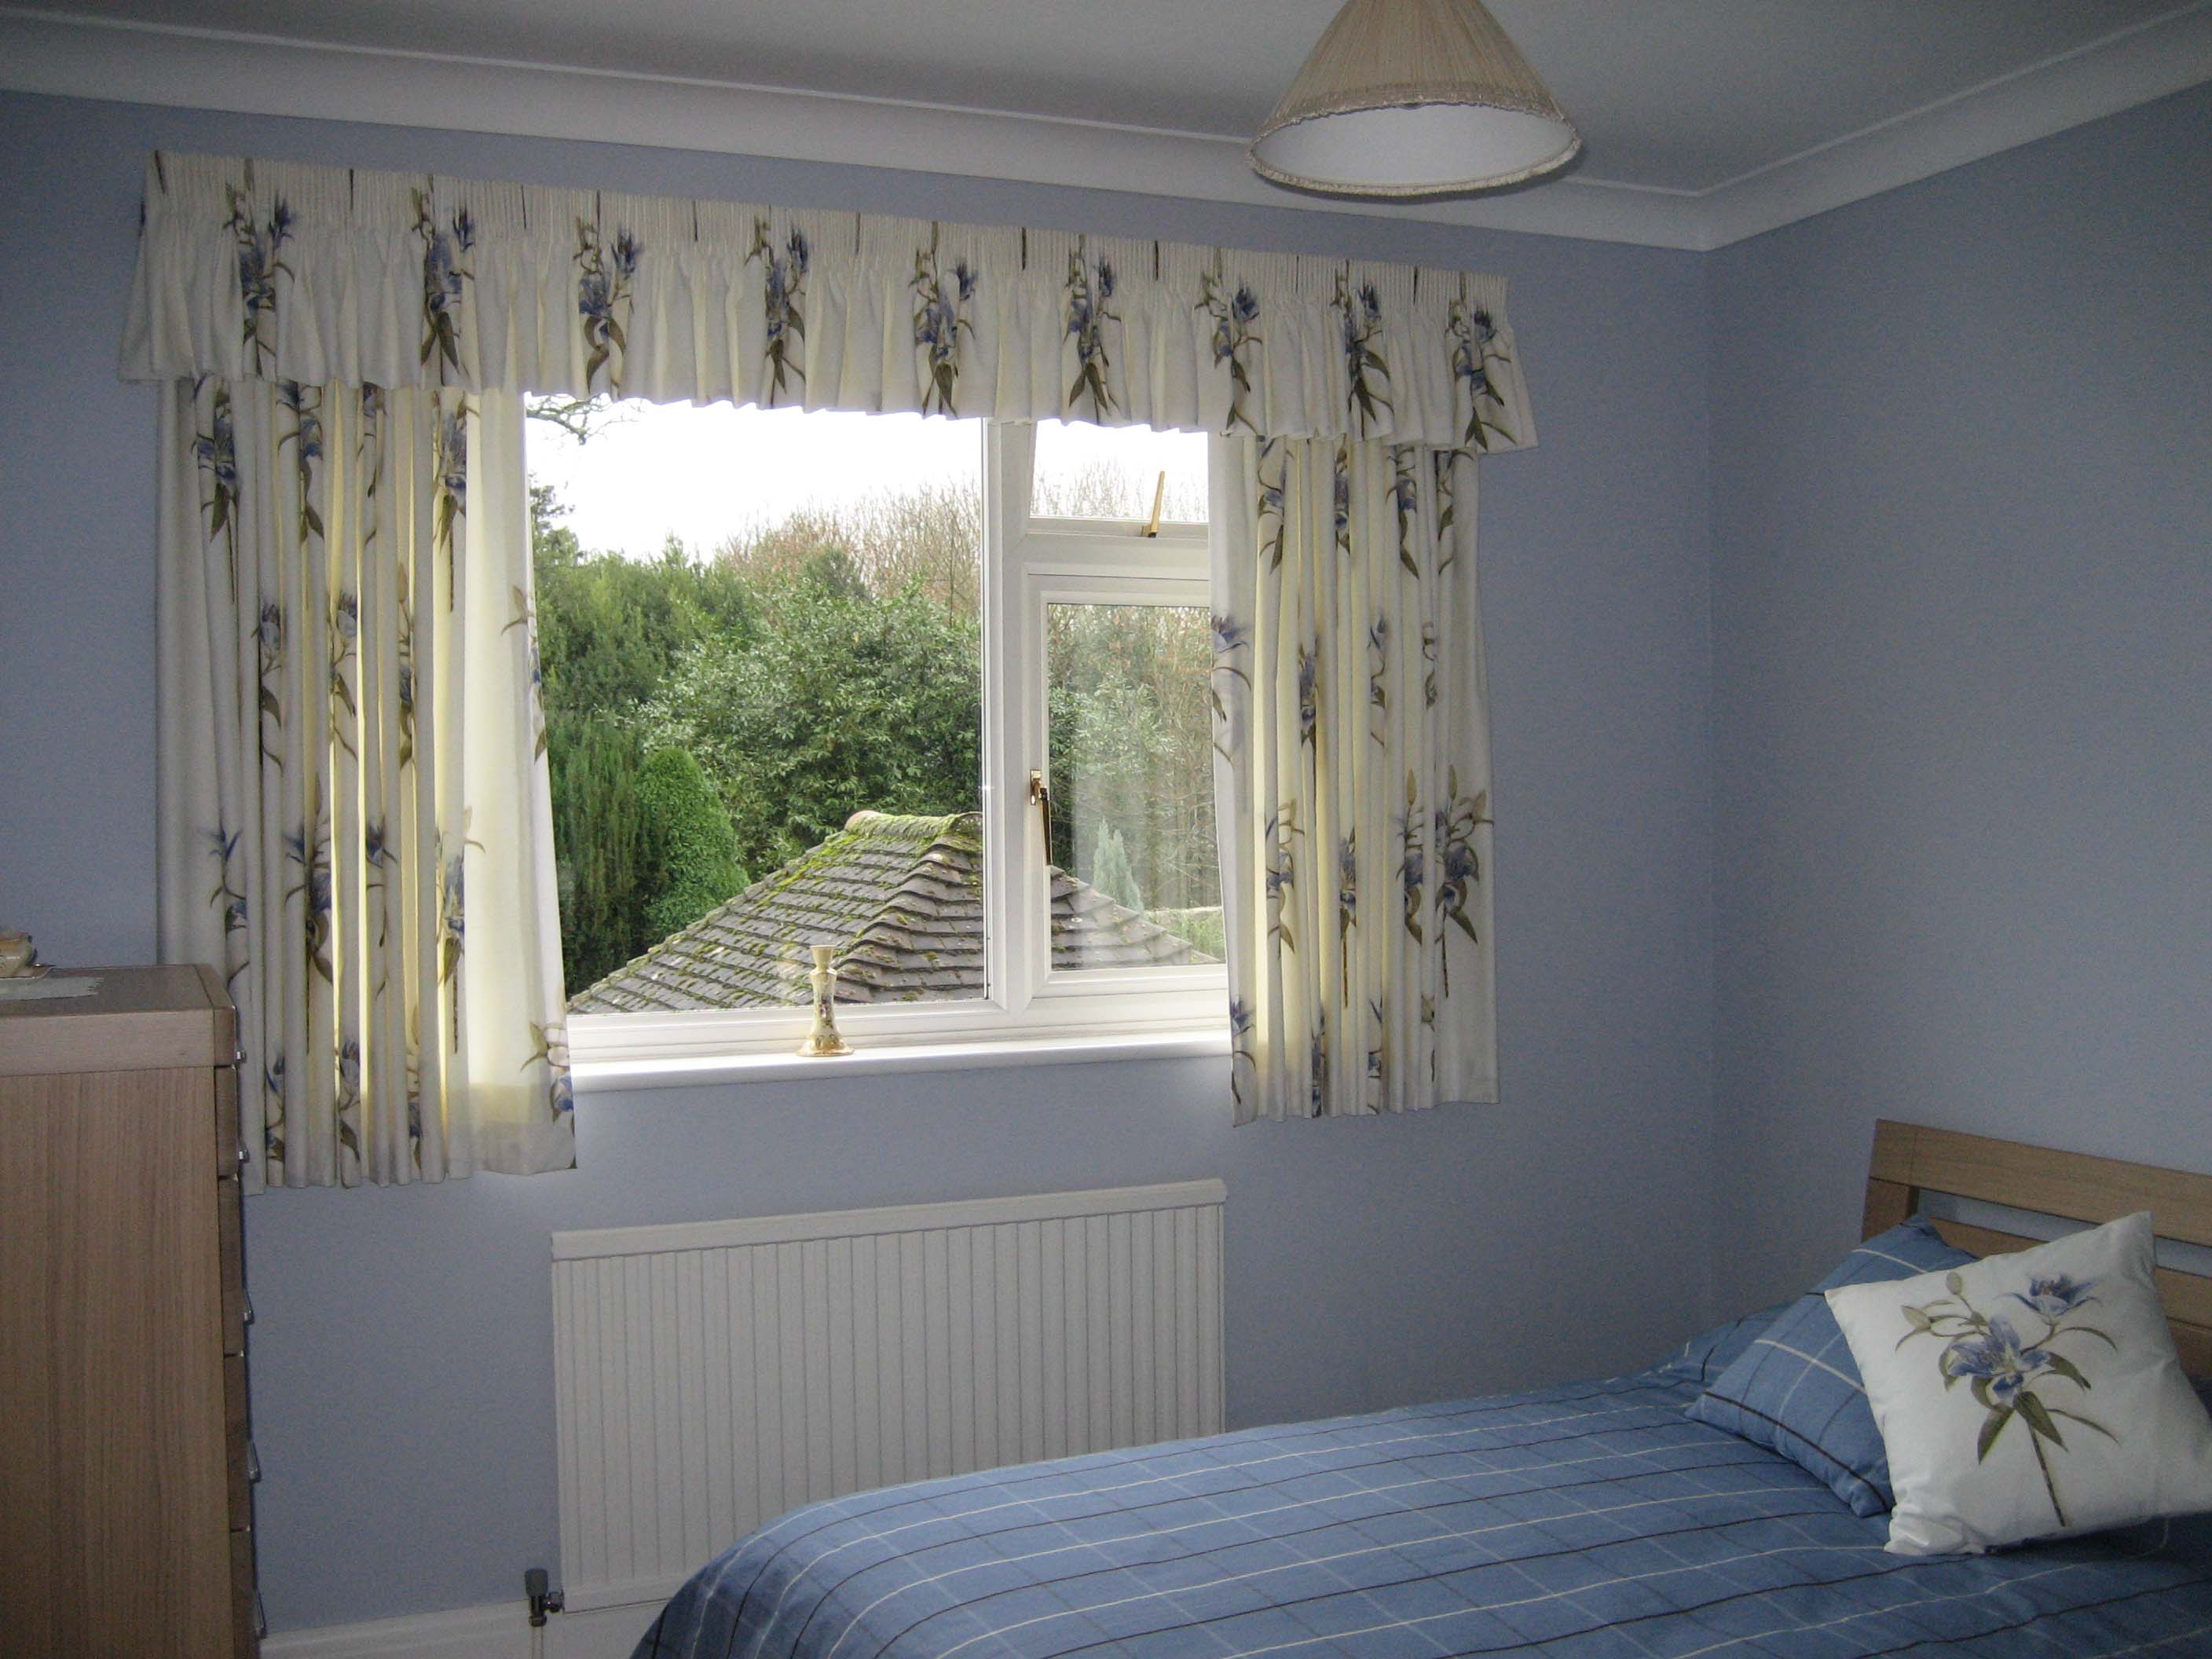 korta gardiner till fönsterbrädan i sovrummet design idéer